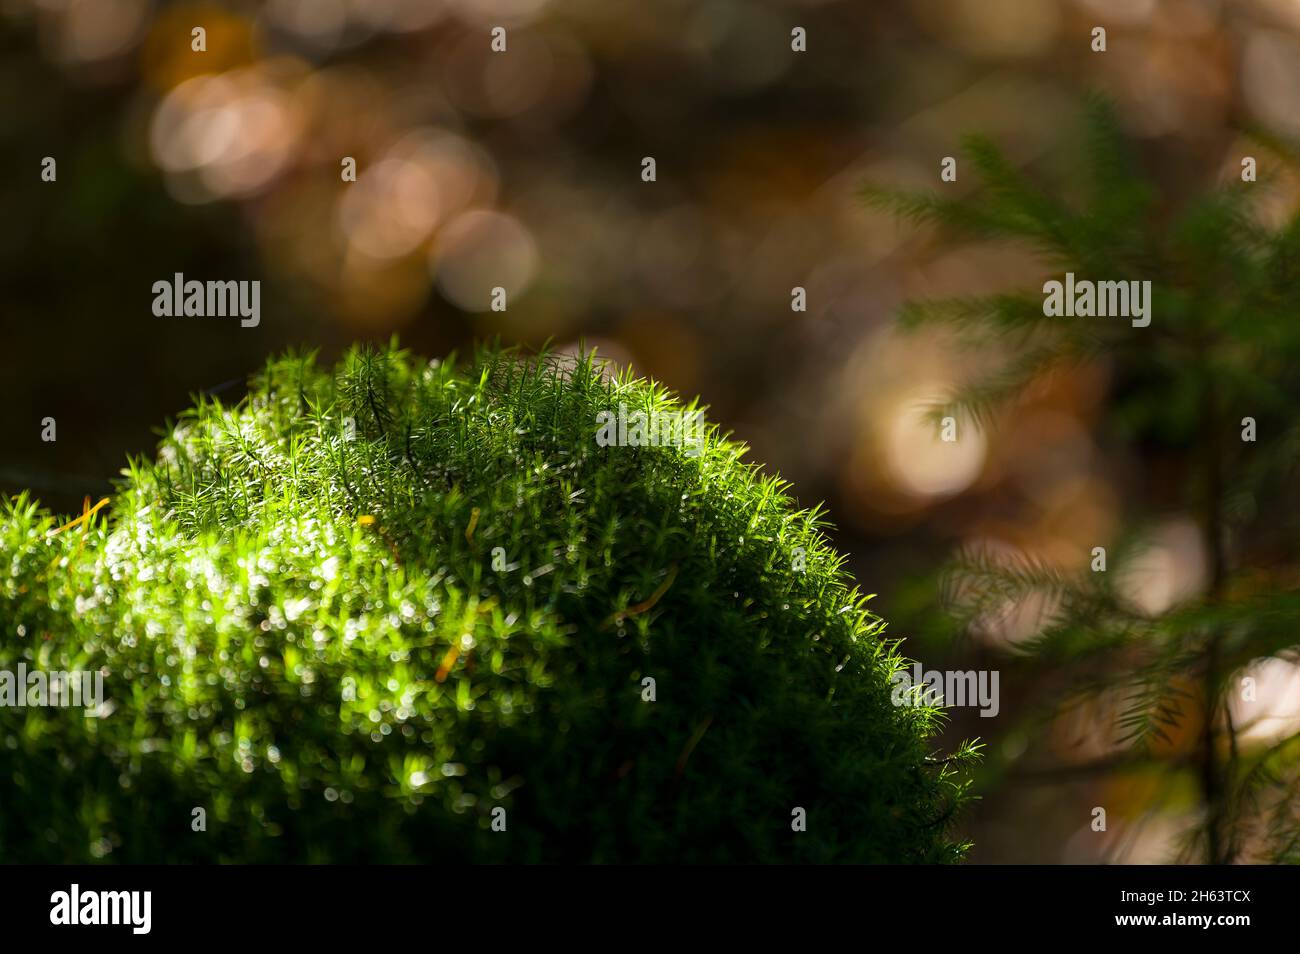 le stalle verdi del widertonmoos (polytrichum) bagliano alla luce del sole, nella foresta a totengrund, riserva naturale vicino bispisen, parco naturale di lüneburg heath, germania, bassa sassonia Foto Stock